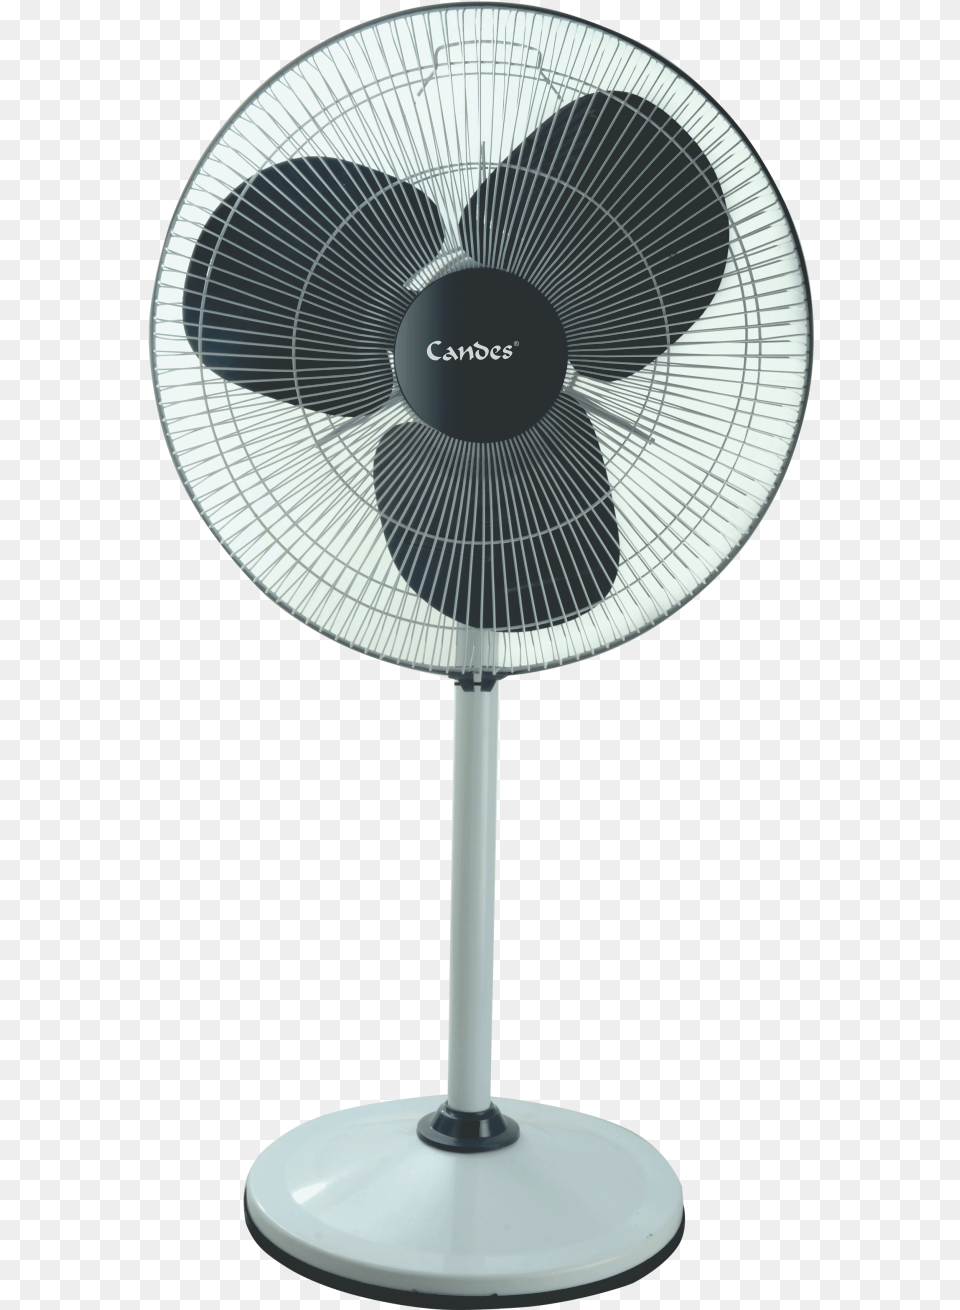 Pedestal Fan Fan, Appliance, Device, Electrical Device, Electric Fan Free Transparent Png